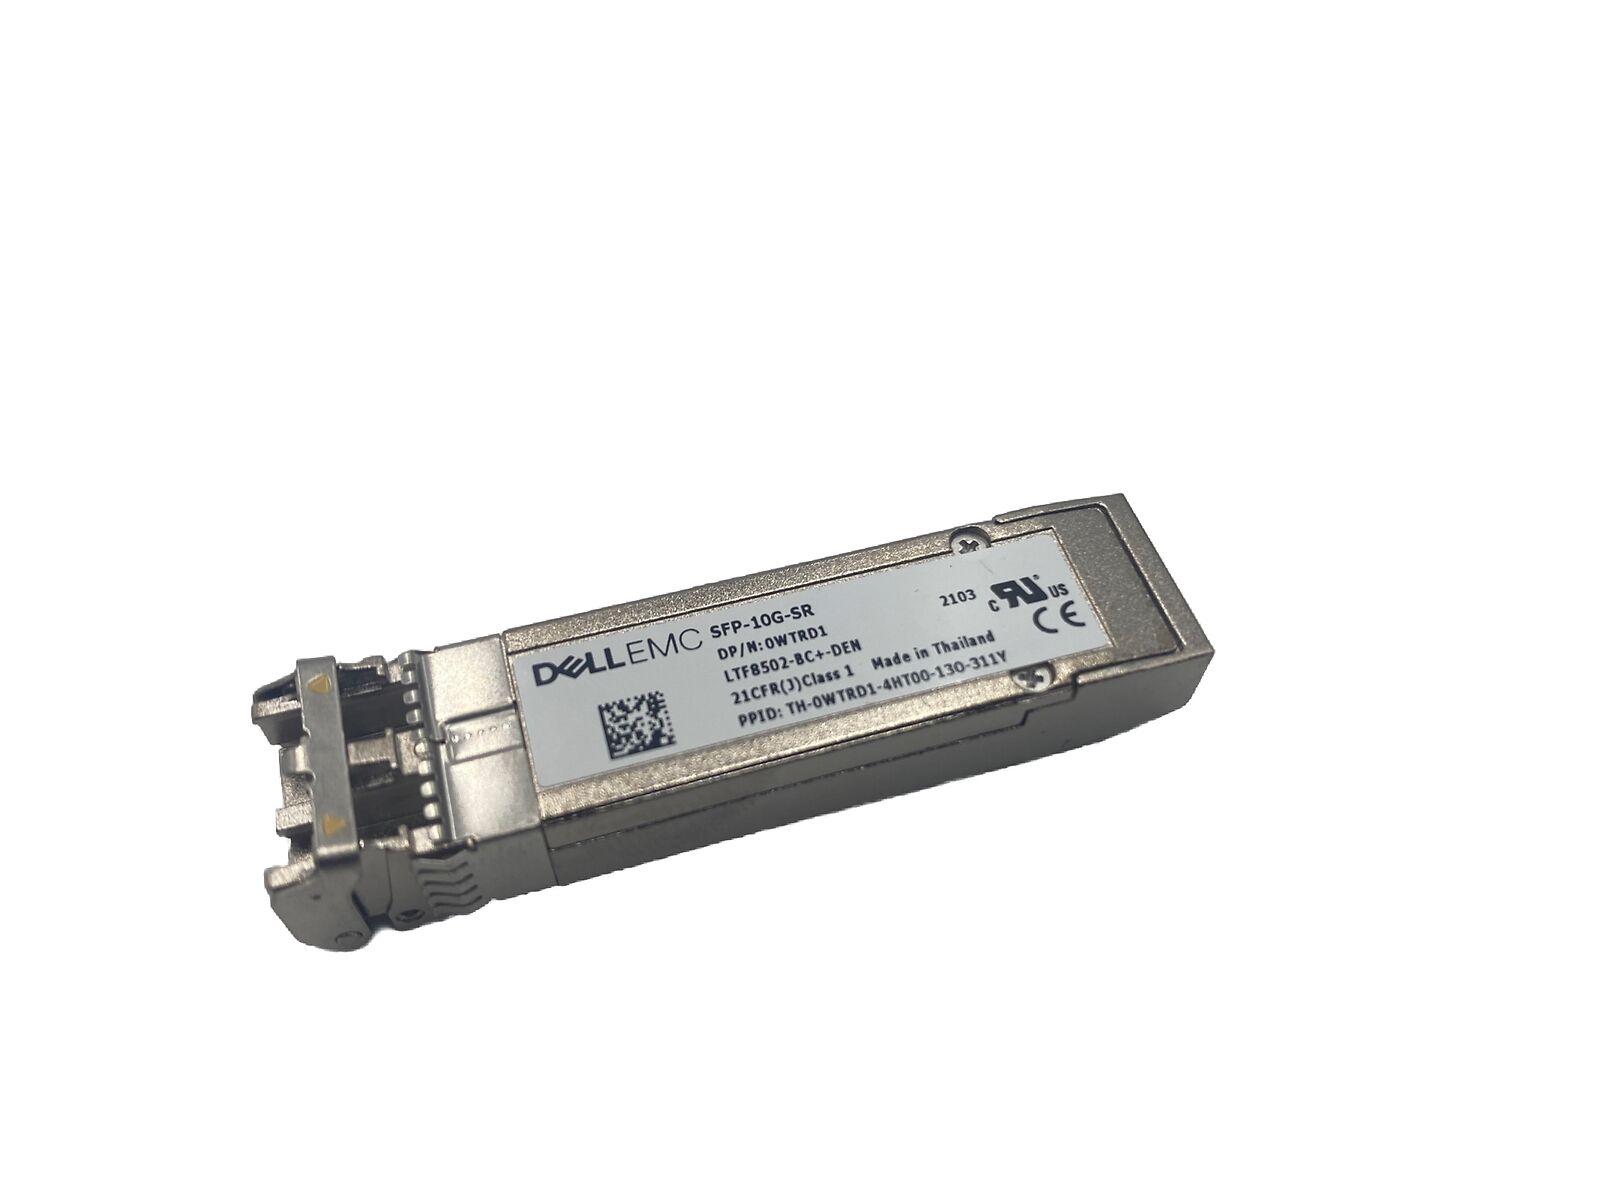 Dell SFP-10G-SR 10G SFP+ 850nm Transceiver Module LTF8502-BC+-DEN WTRD1